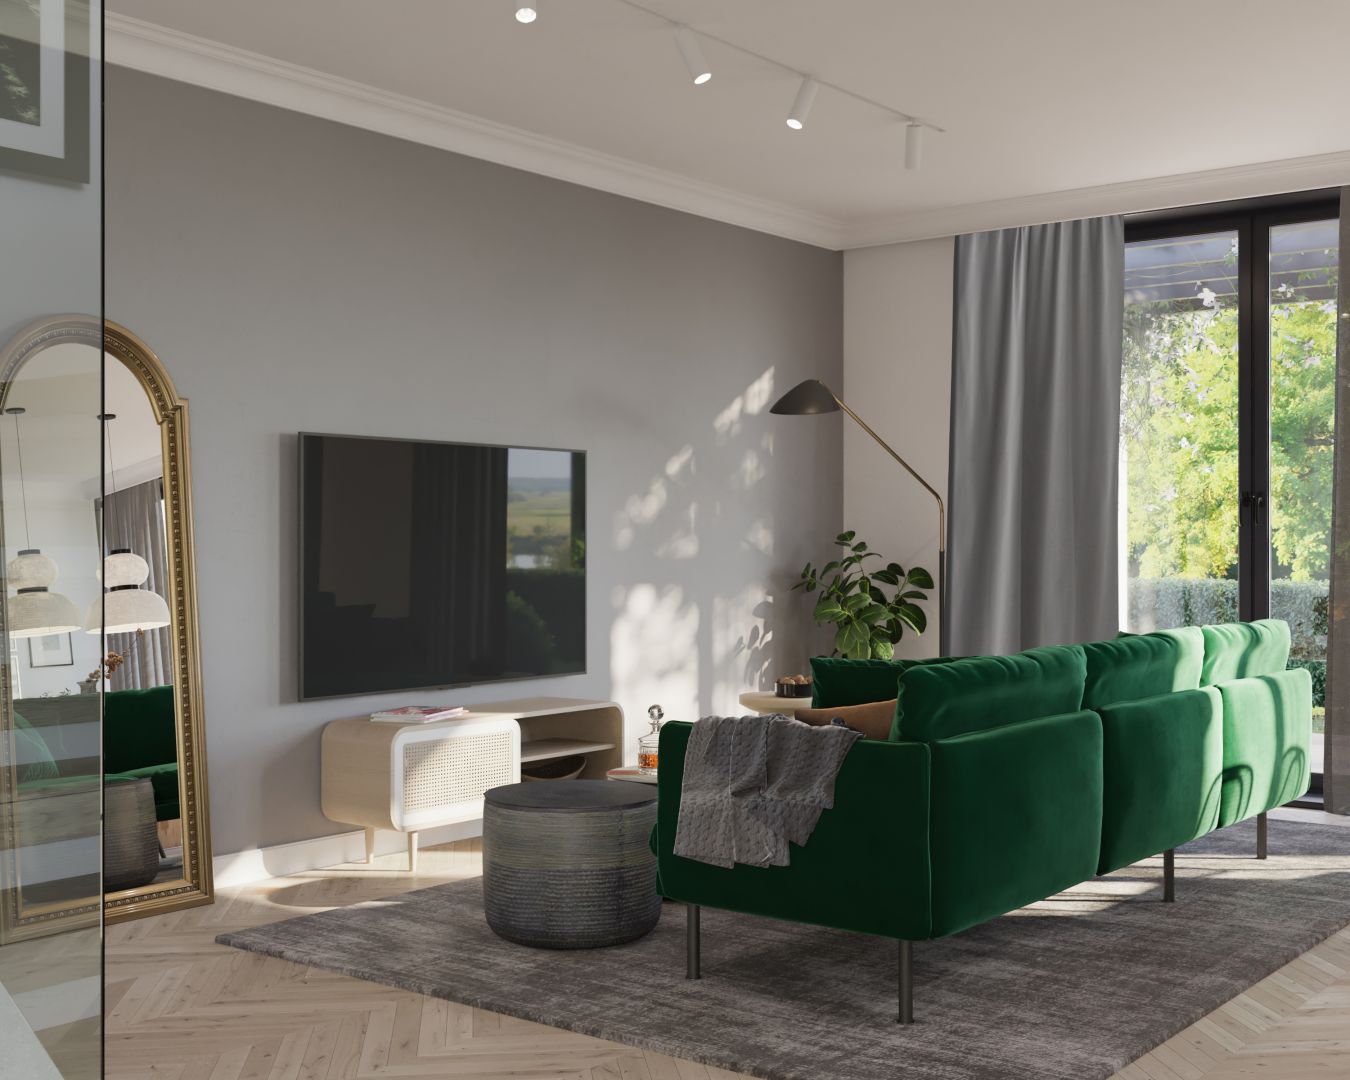 Strefa wypoczynku zogniskowana jest wokół telewizora. Zielona kanapa to mocny akcent stylistyczny. Projekt Marcin Dekor x Loft Factory